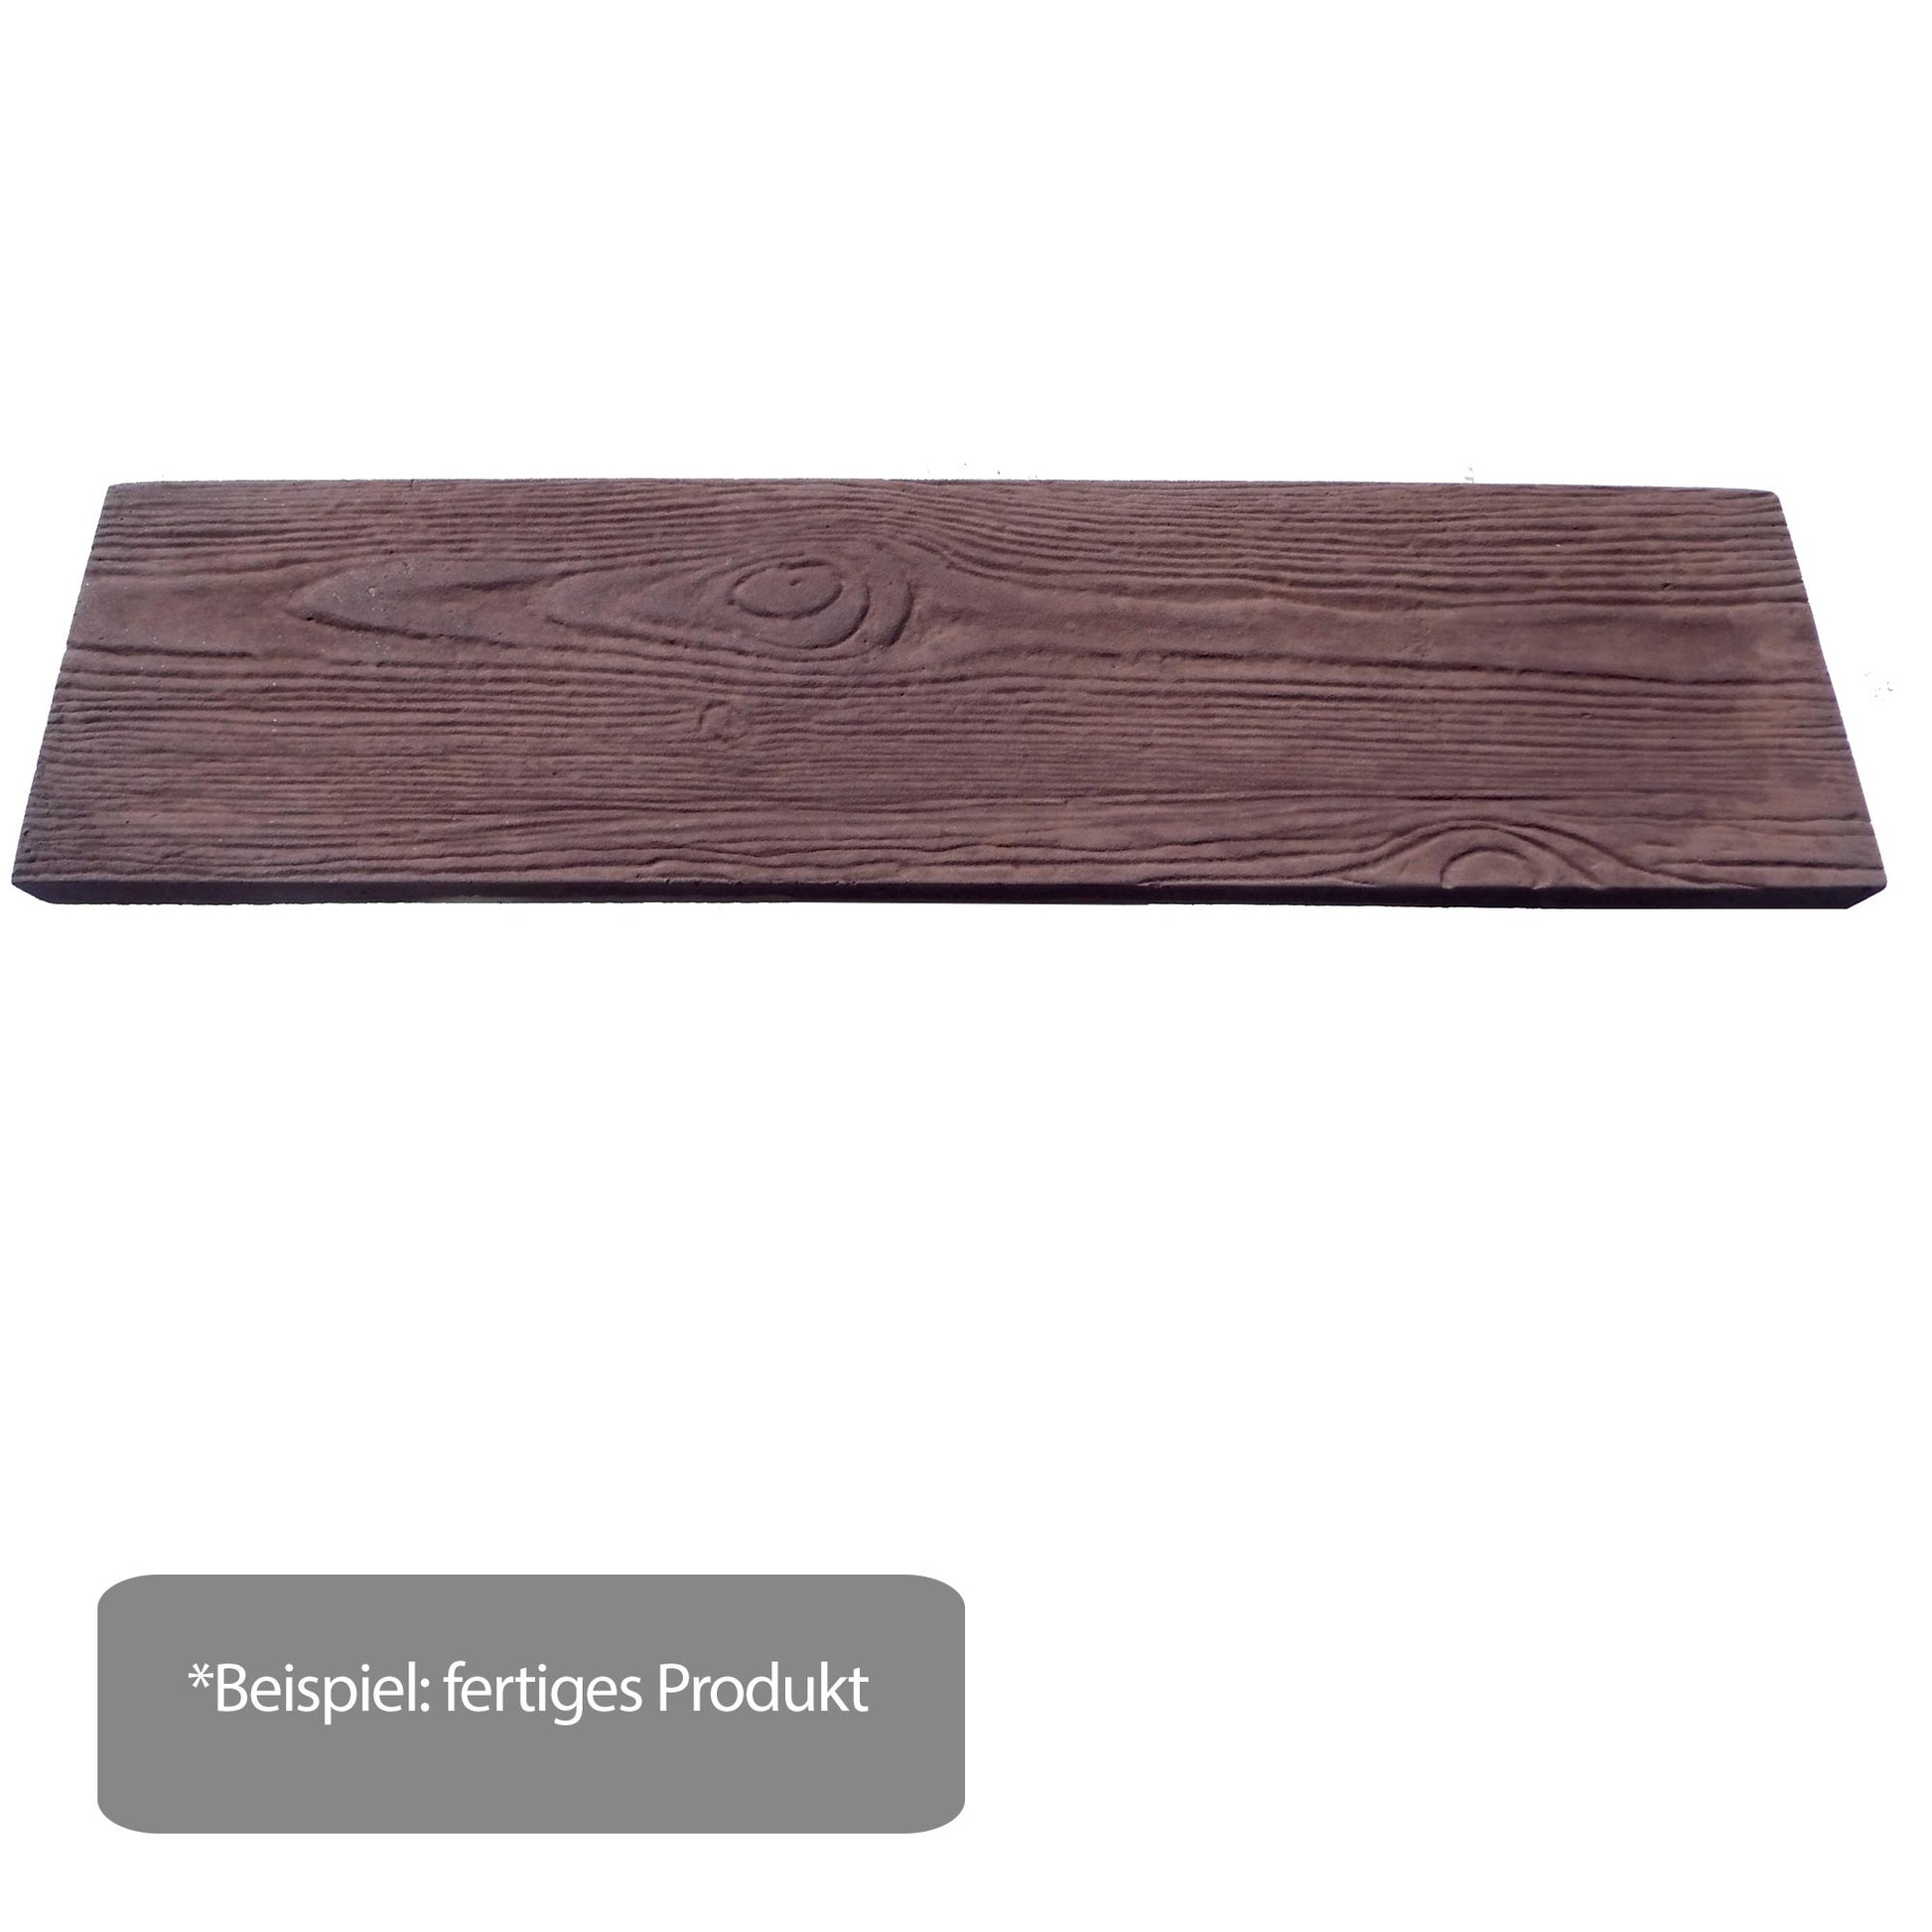 Braunpigment für Beton / Zement / Gips - 1kg - Farbplatte